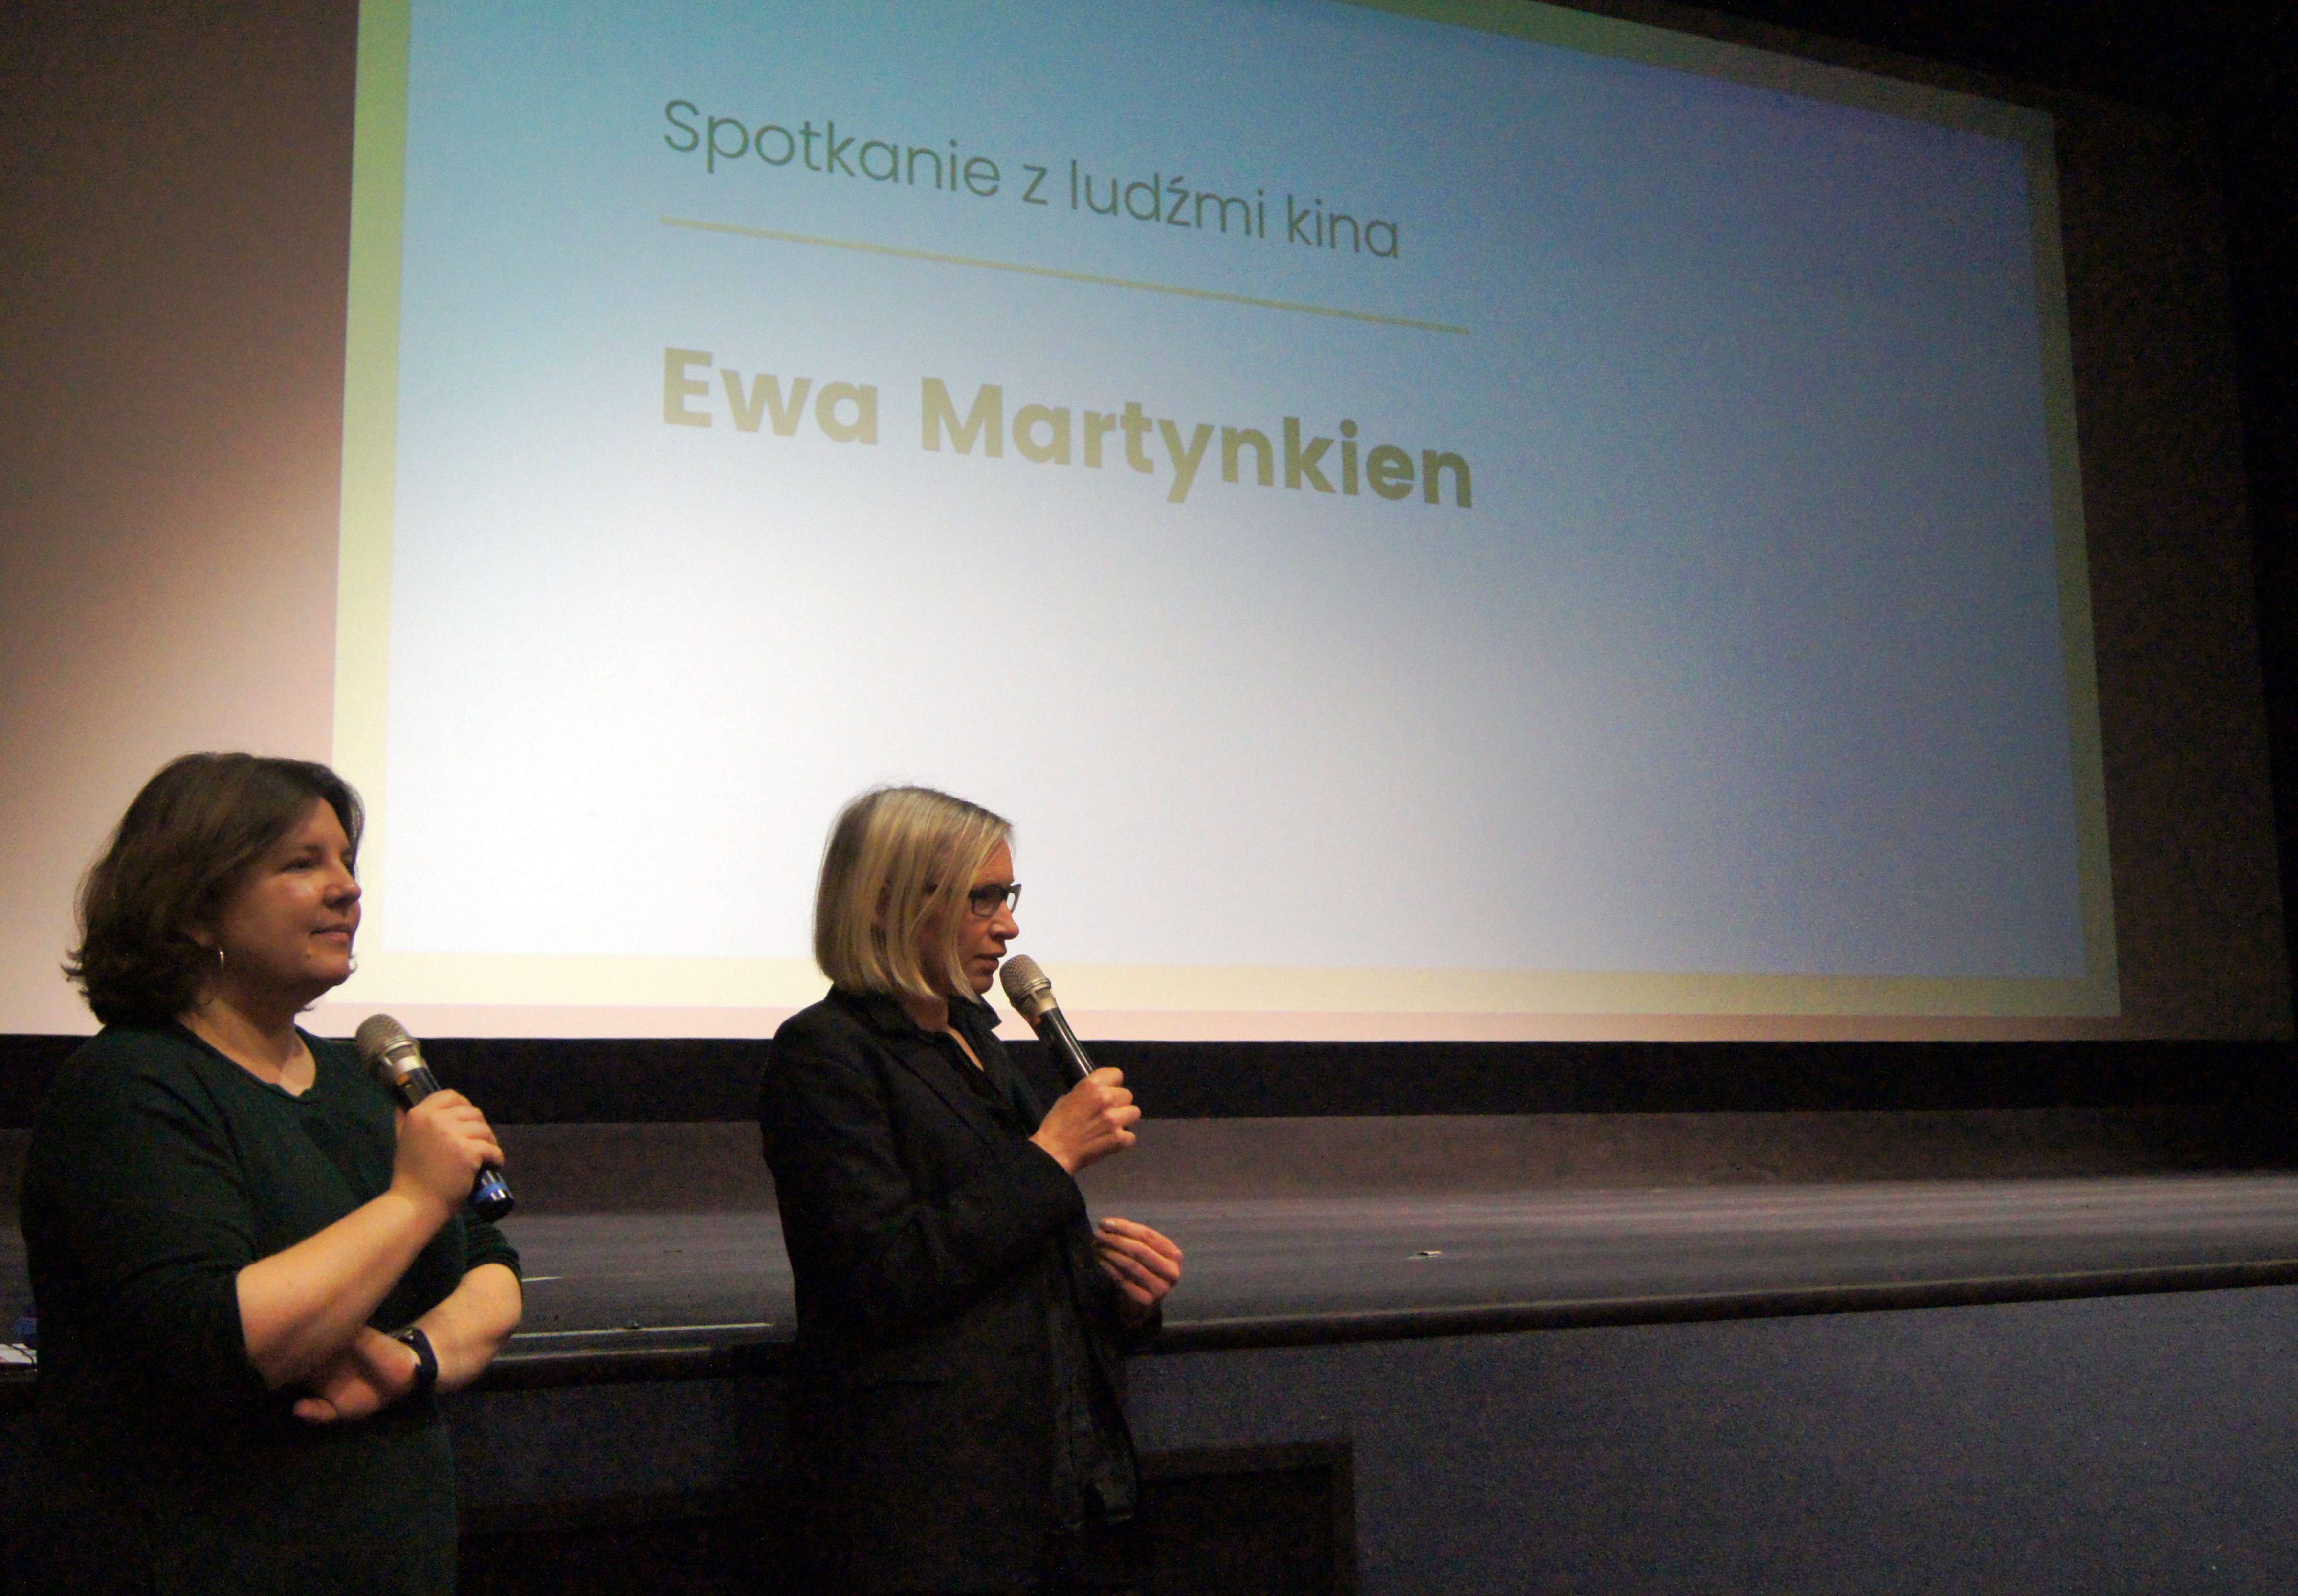 Spotkanie z ludźmi kina - Ewa Martynkien